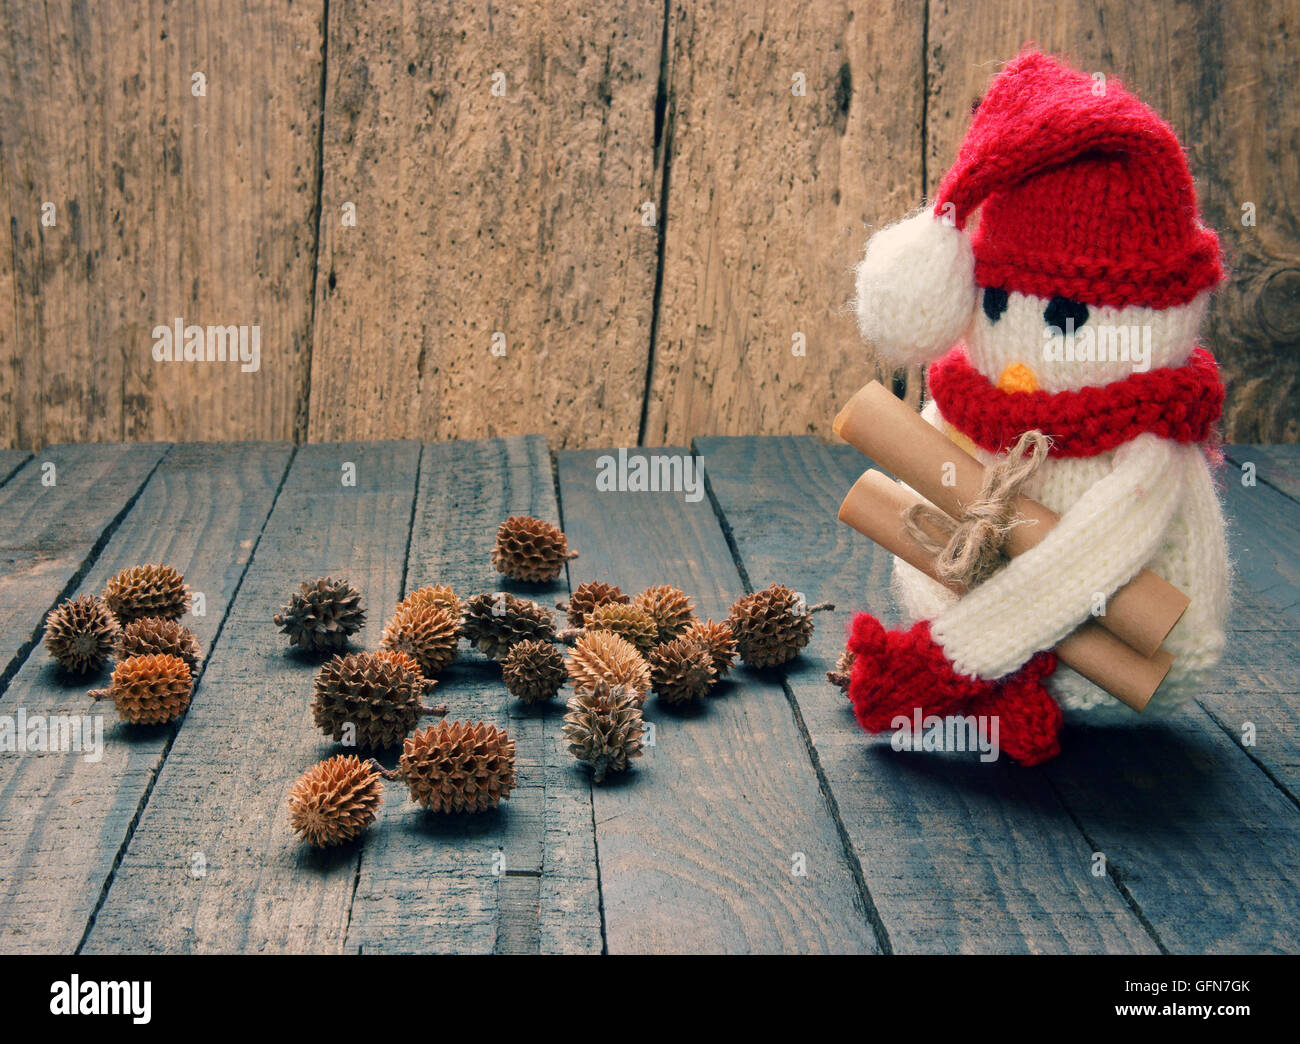 Maglia ornamento di Natale, mano pupazzo di neve, fatto a mano in maglia di pinguini dal rosso, lana bianca, questo giocattolo per vacanze di natale Foto Stock